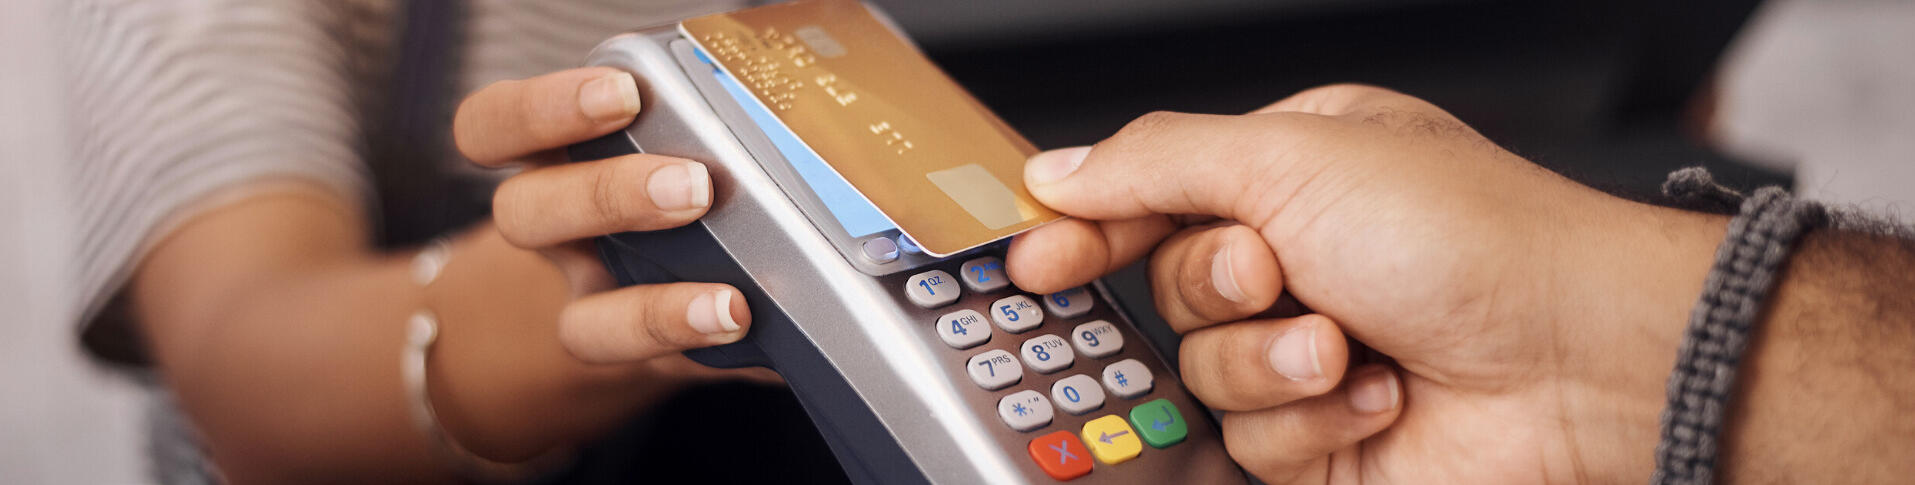 7 conseils pour bien utiliser votre carte de crédit 2